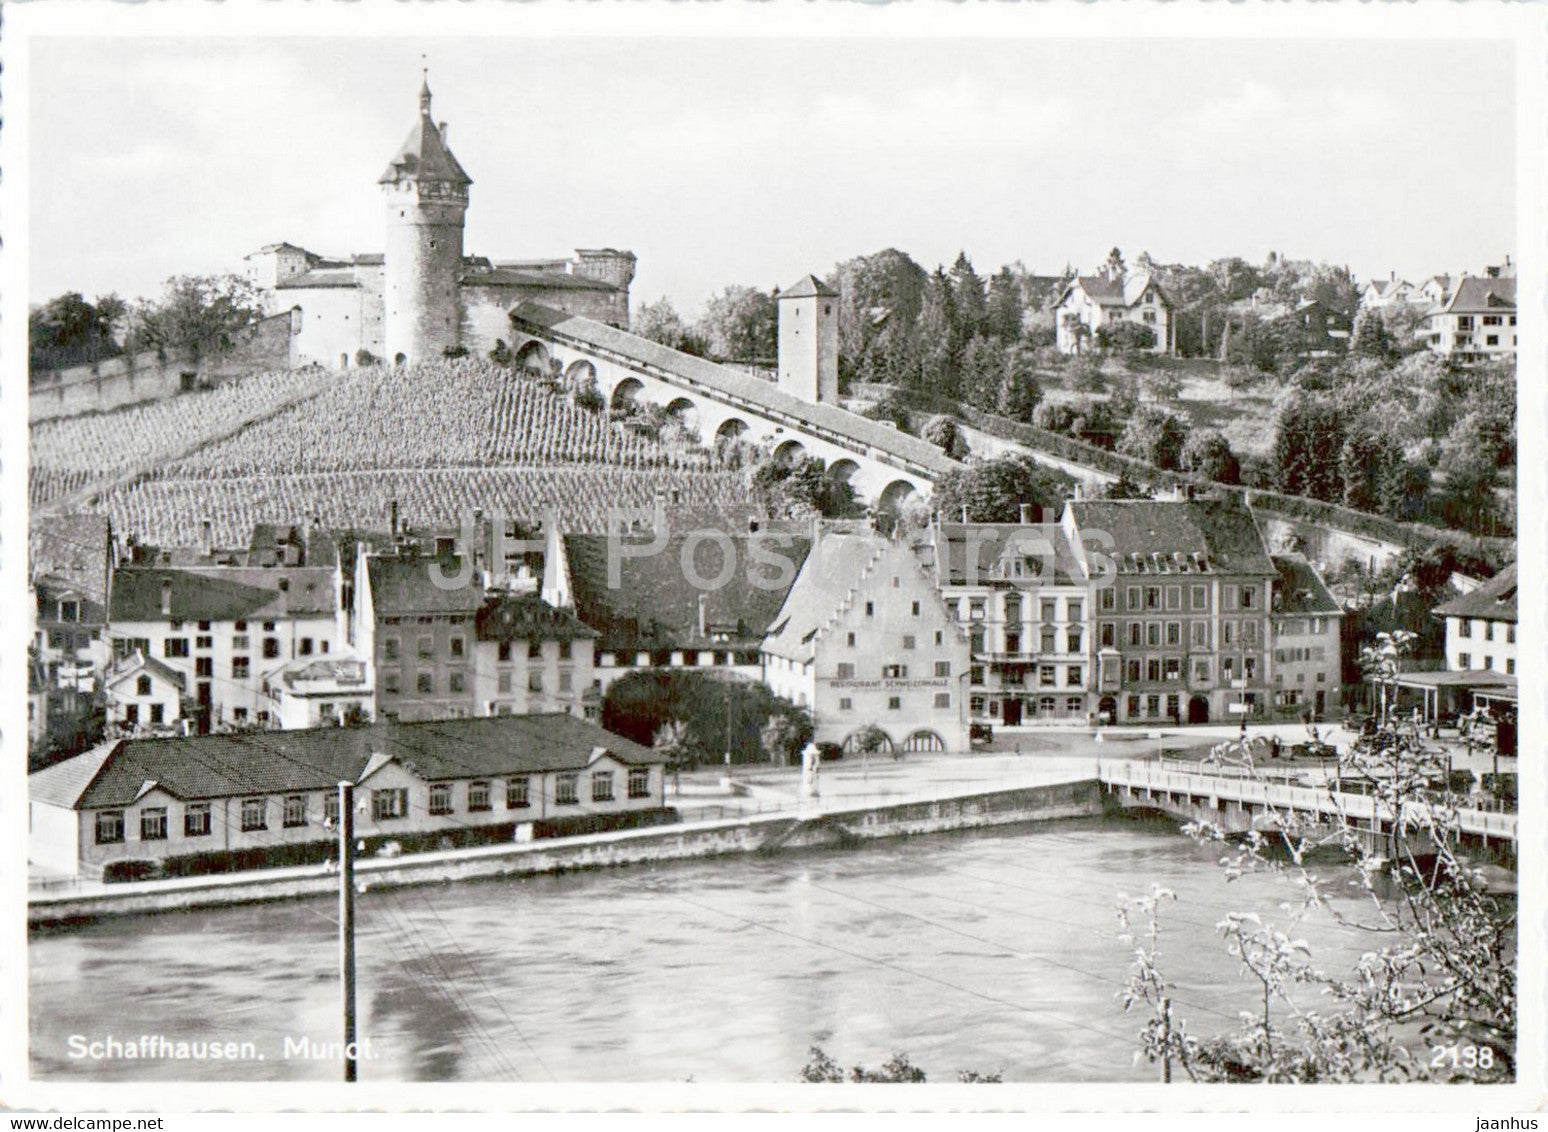 Schaffhausen - Munot - 1941 - old postcard - Switzerland - used - JH Postcards